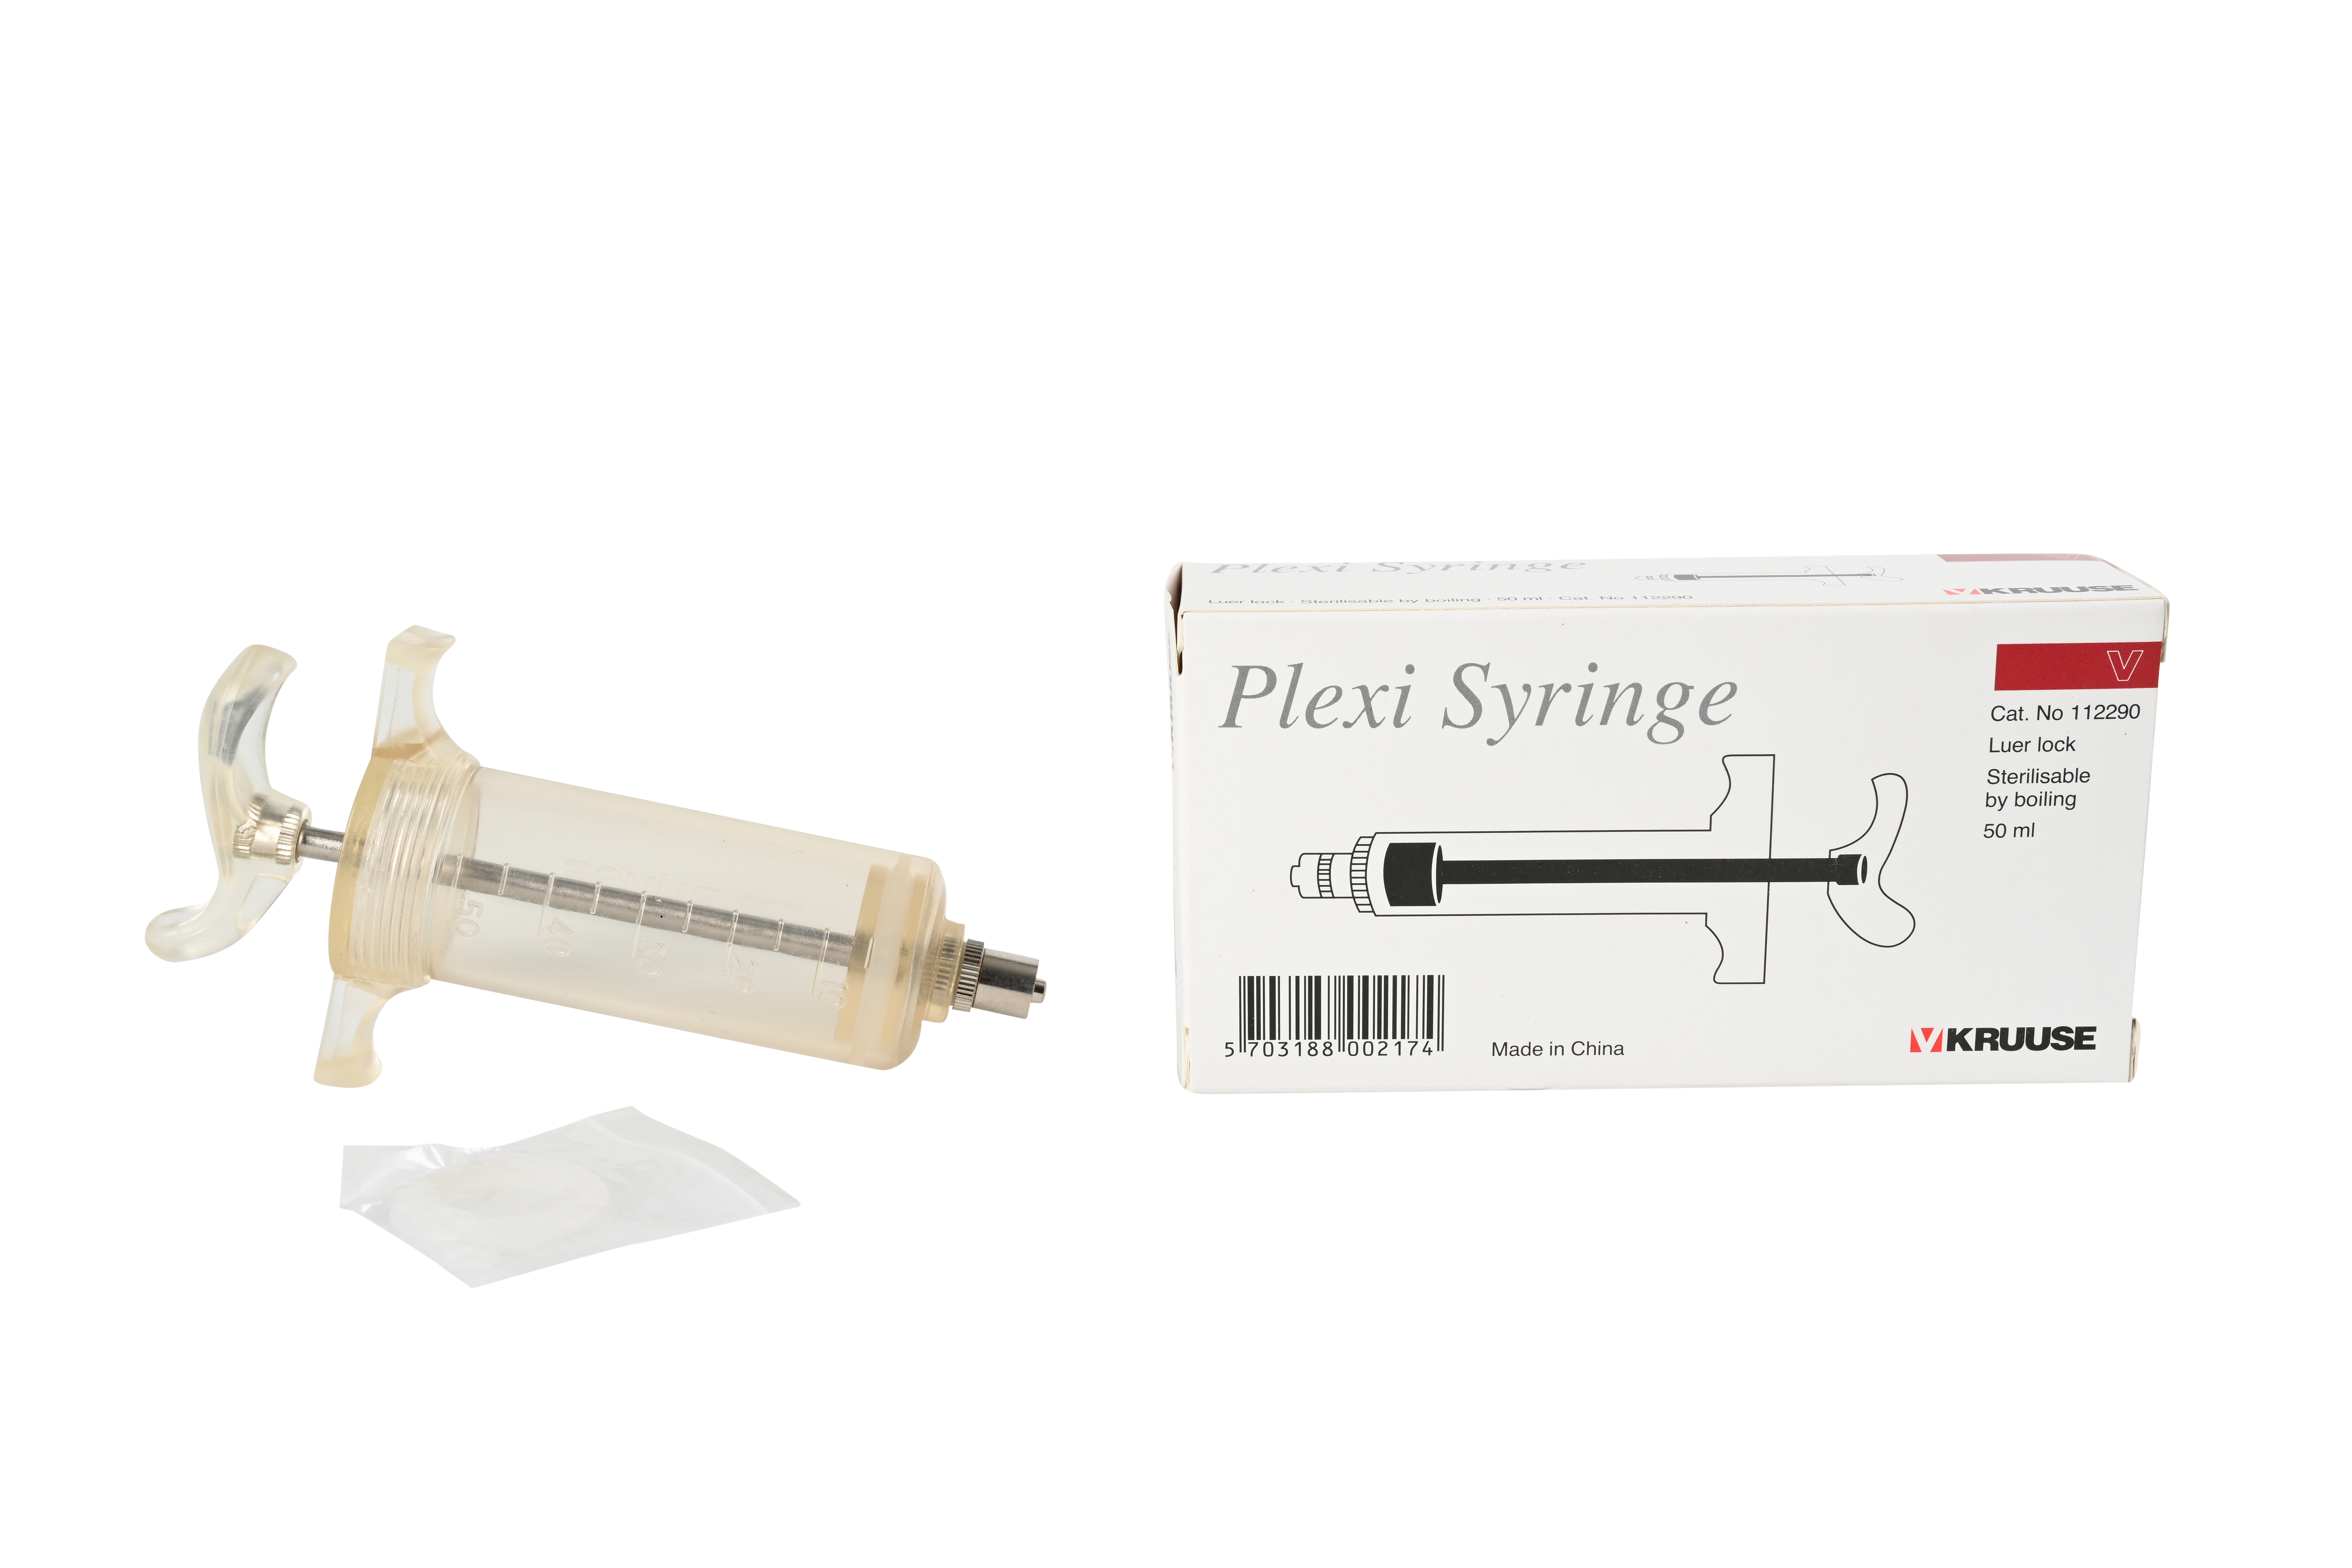 KRUUSE Plexi Syringe, Luer Lock, 50 ml